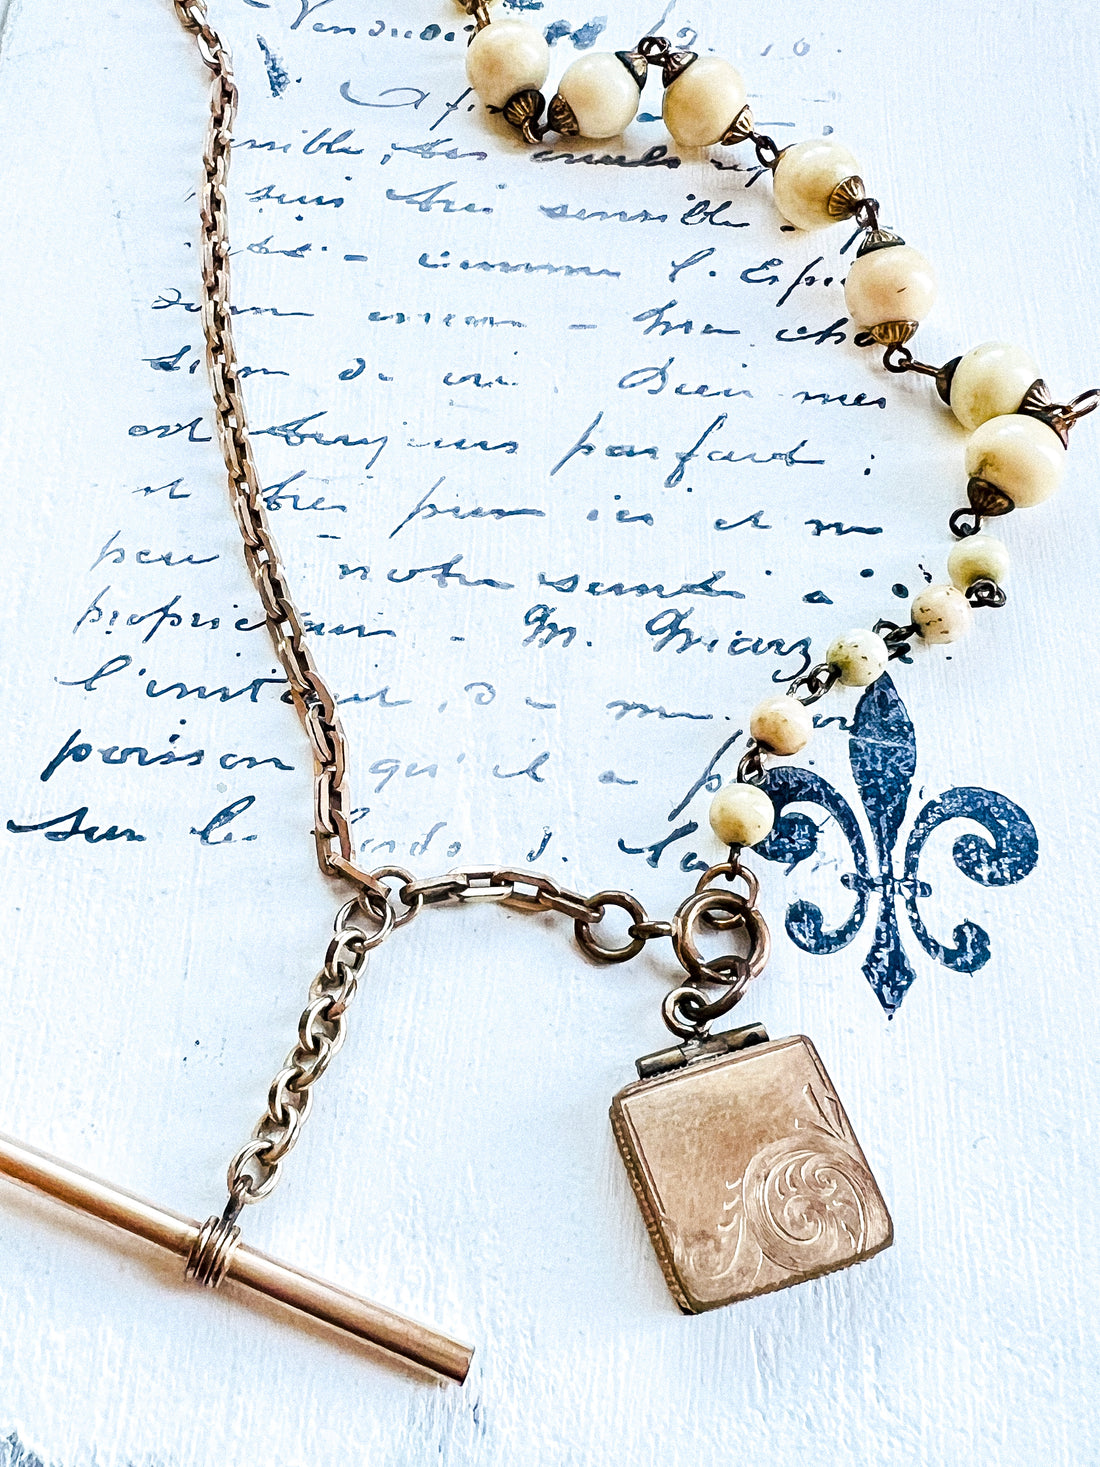 Victorian Photo Locket Watch Chain Necklace